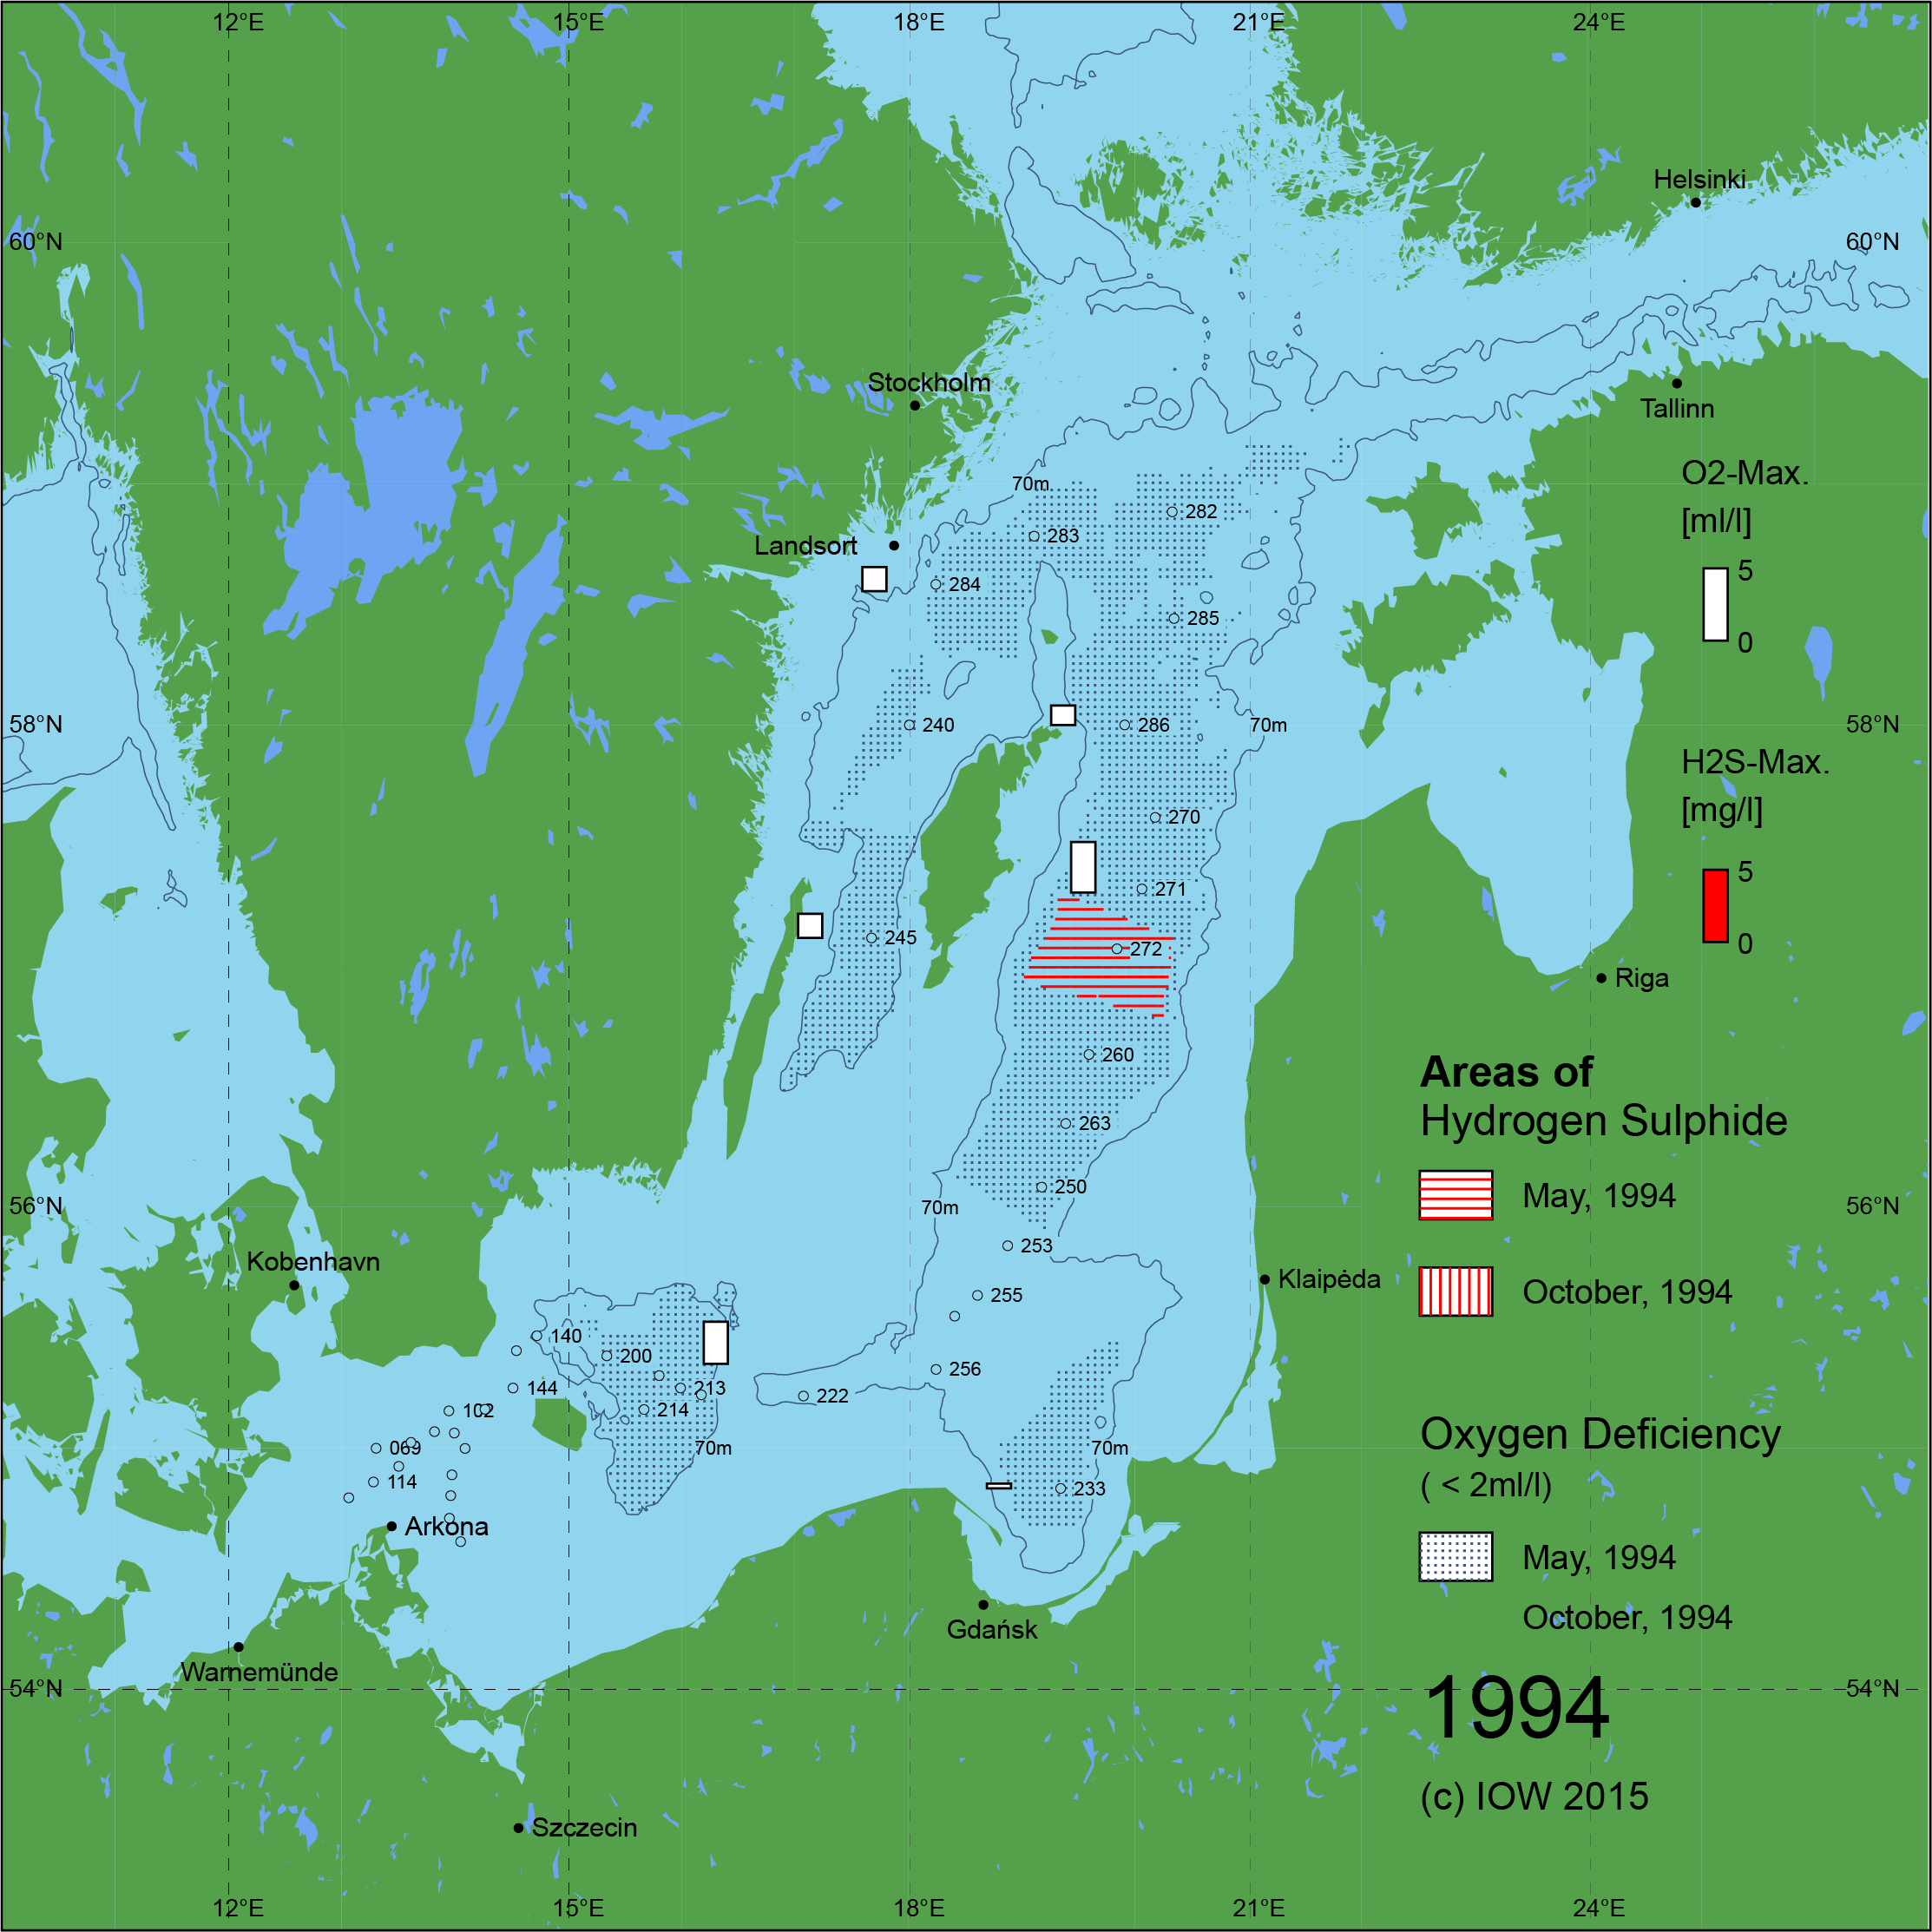 Sauerstoffarme und sauerstofffreie Gebiete in der Ostsee - 1994